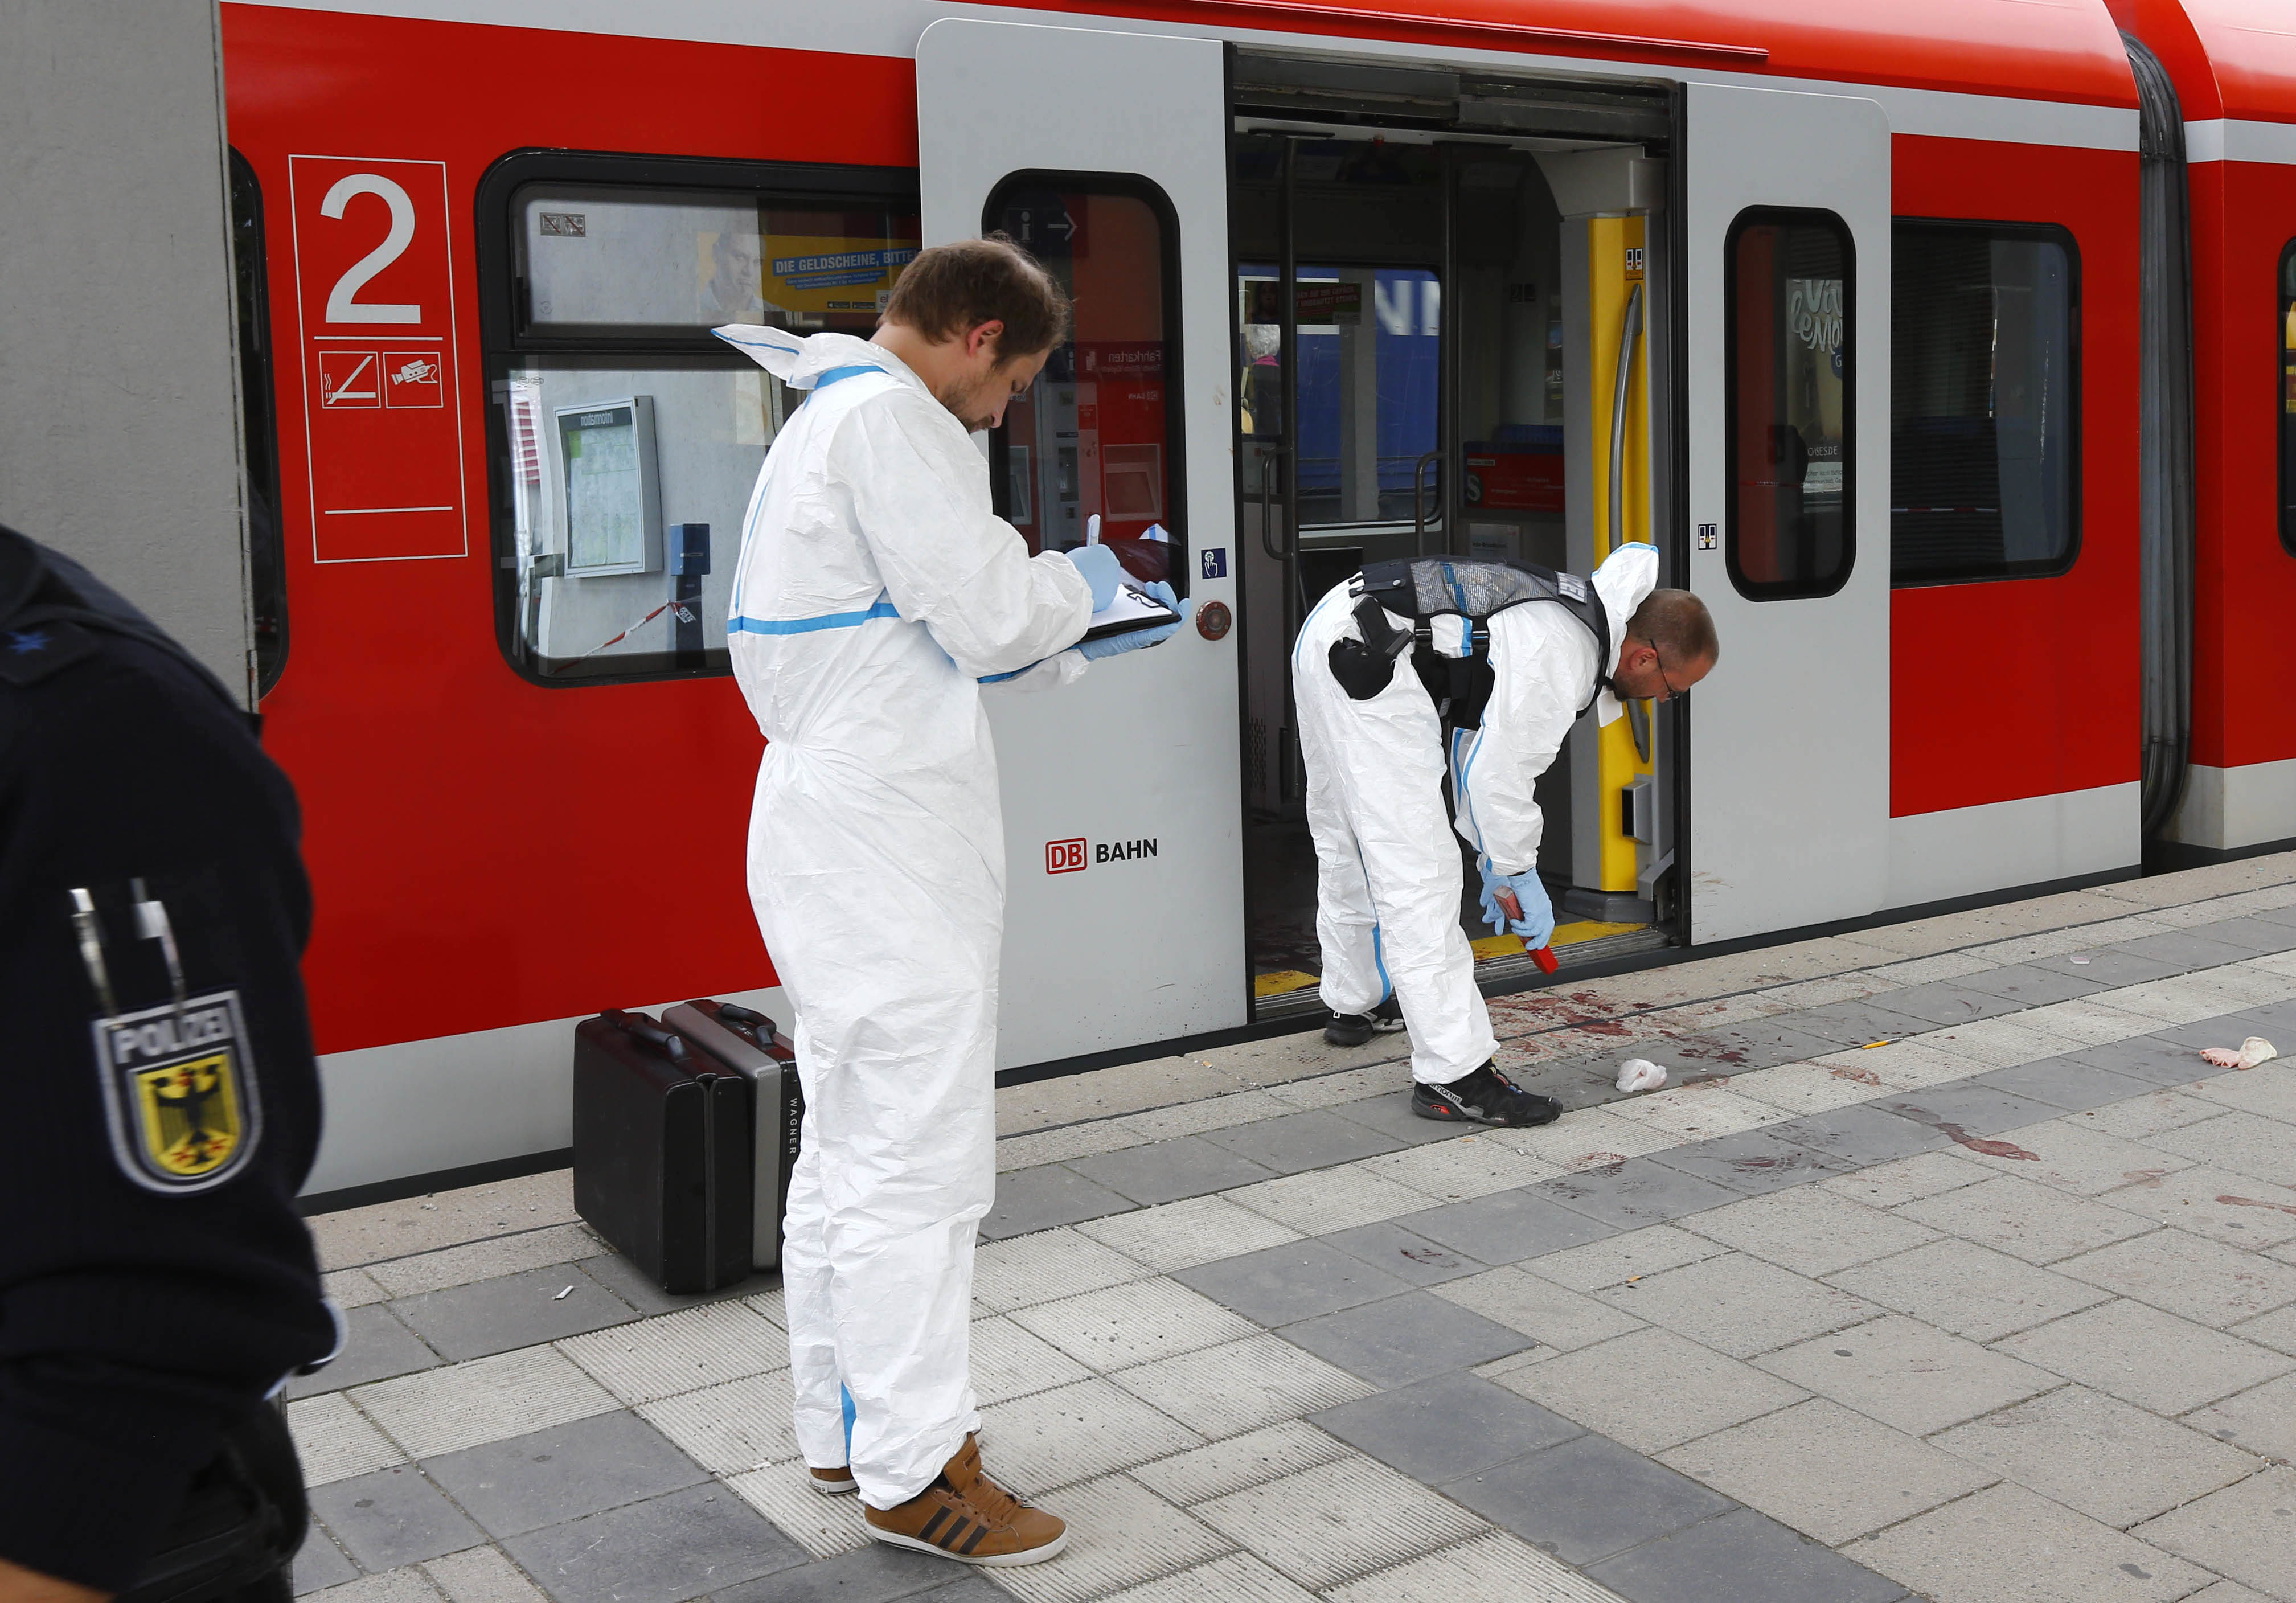 Кървава атака на гара край Мюнхен с викове ”Аллах акбар”